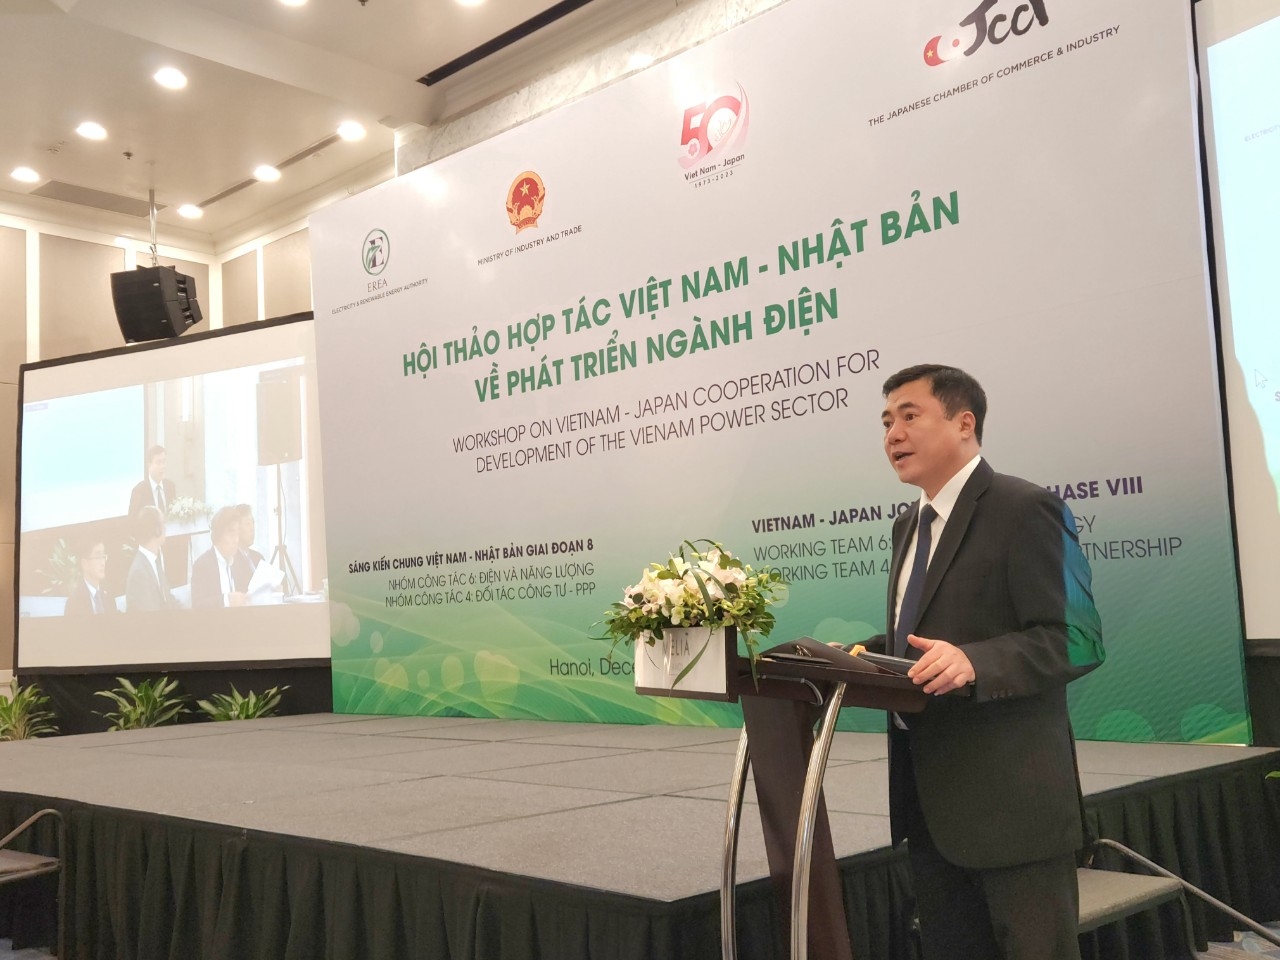 Phát triển ngành điện trong khuôn khổ sáng kiến chung Việt Nam- Nhật Bản